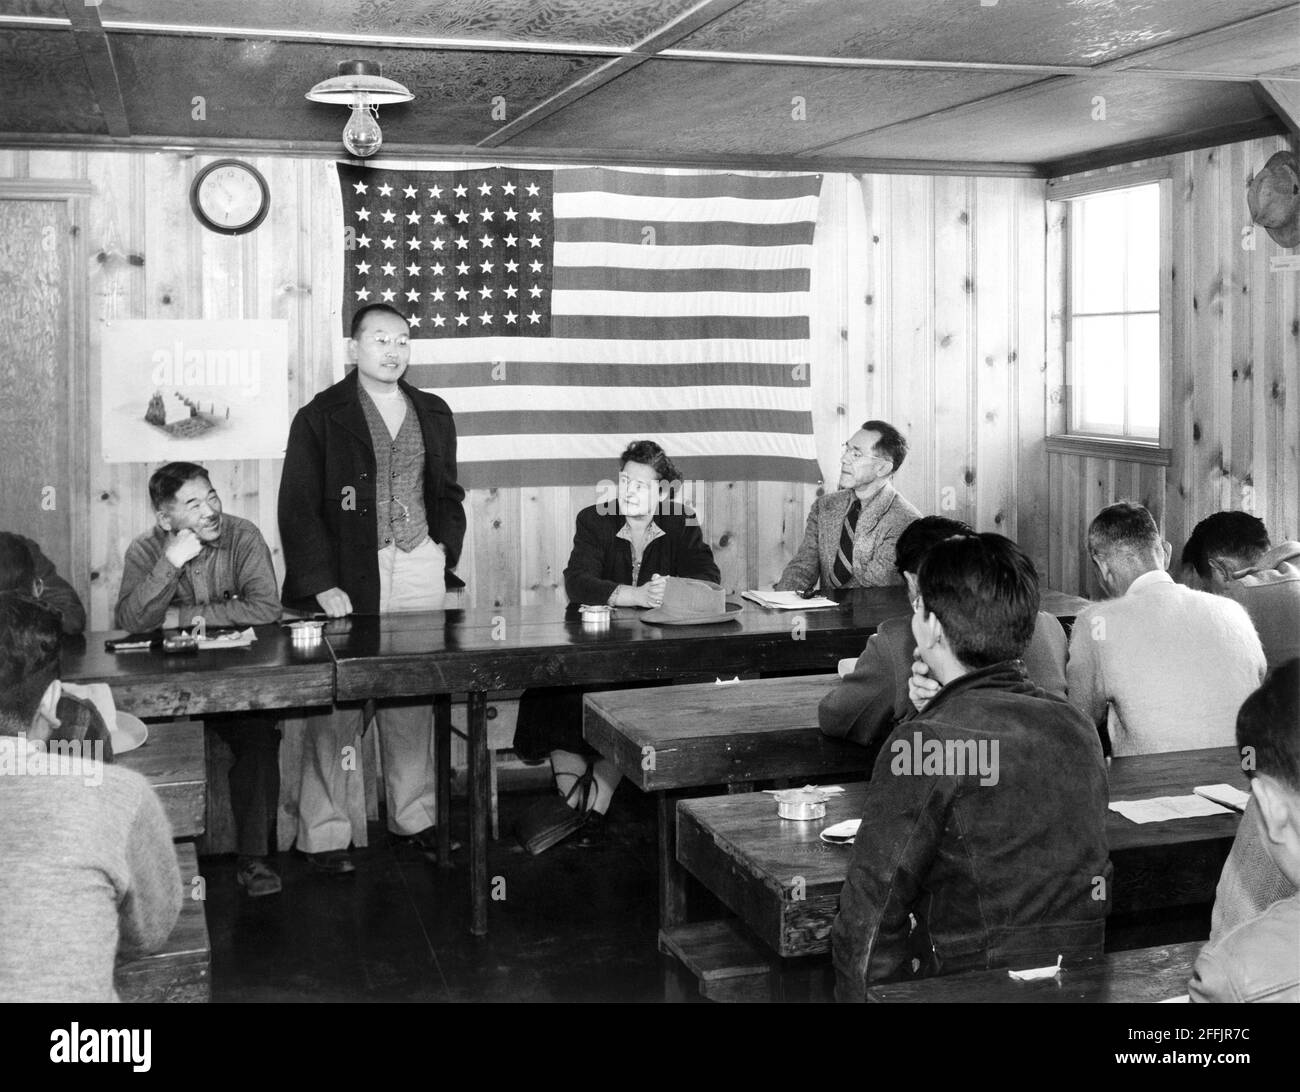 Roy Takeno (debout), s'adressant à un groupe de personnes à la réunion de la mairie, Manzanar Relocation Center, Californie, États-Unis, Ansel Adams, Collection Manzanar War Relocation Centre, 1943 Banque D'Images